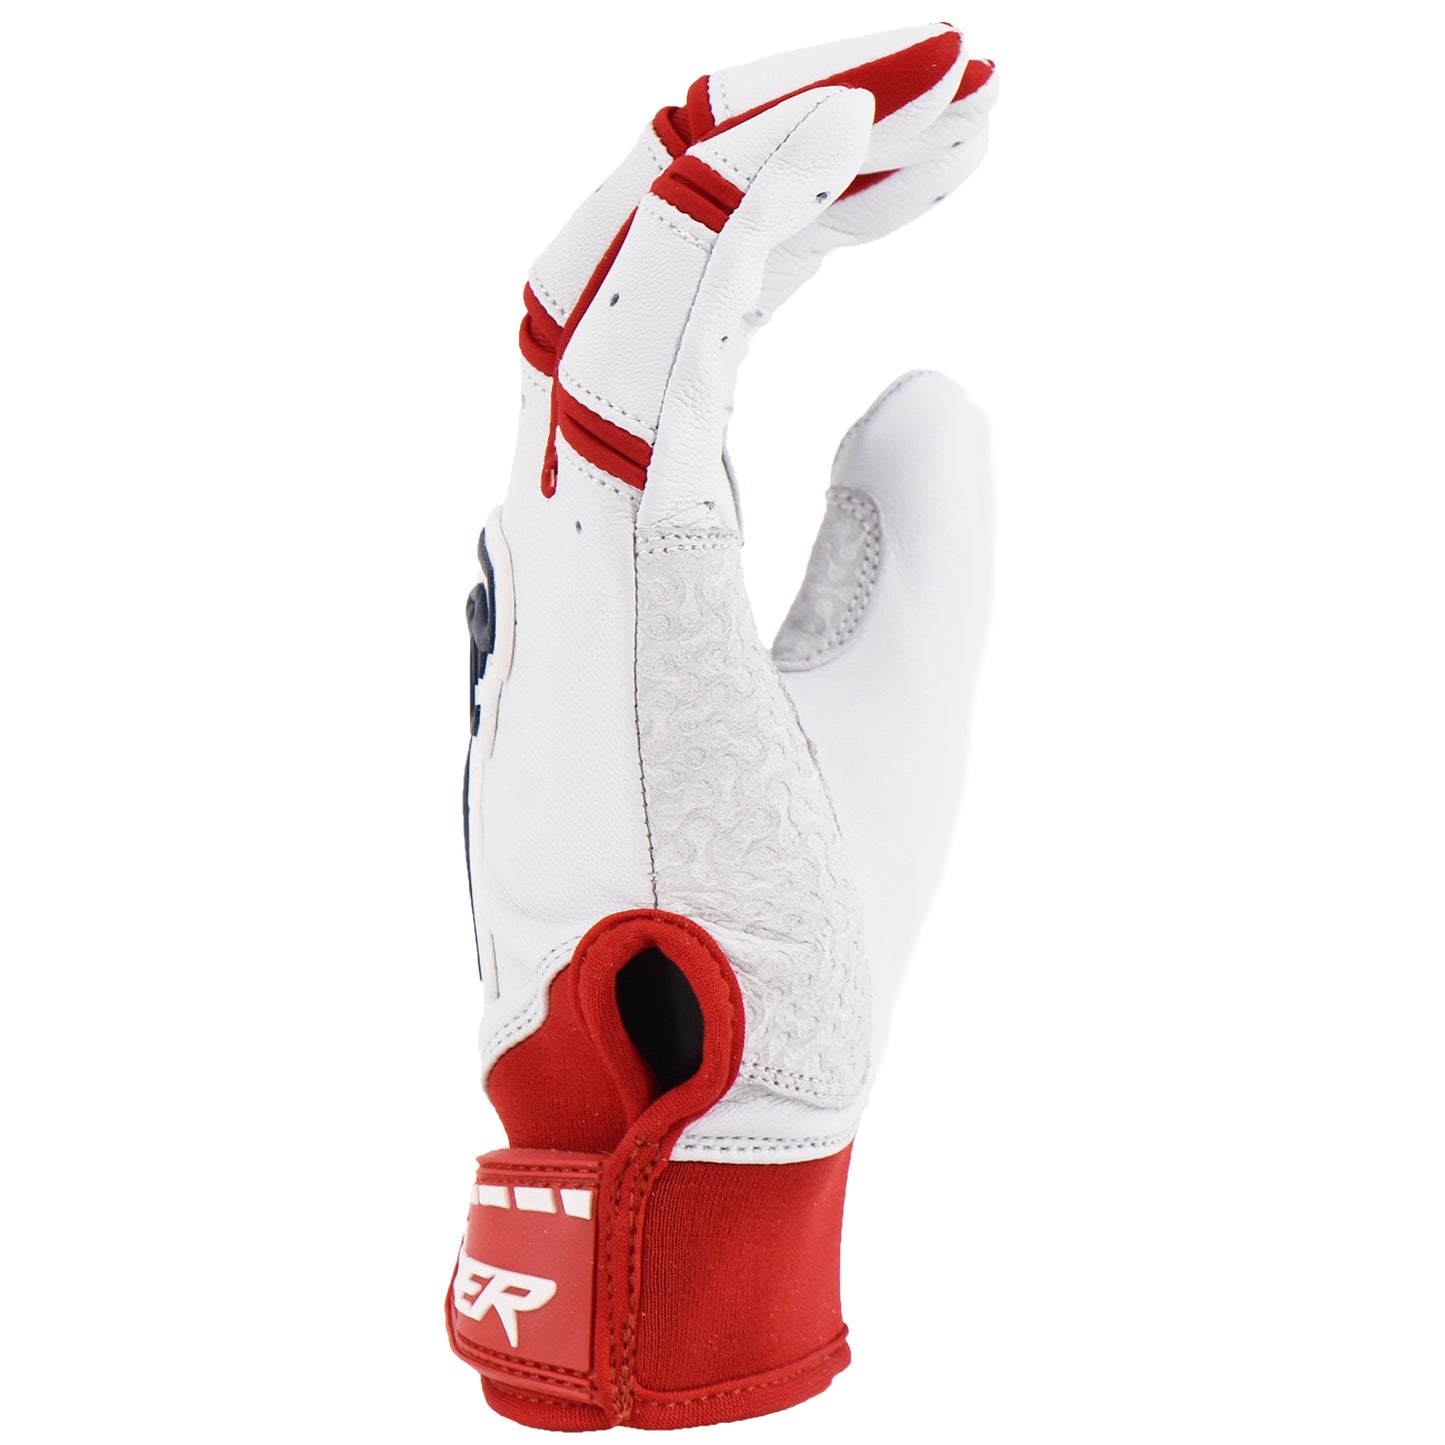 Viper Grindstone Short Cuff Batting Glove - White/Red/Navy